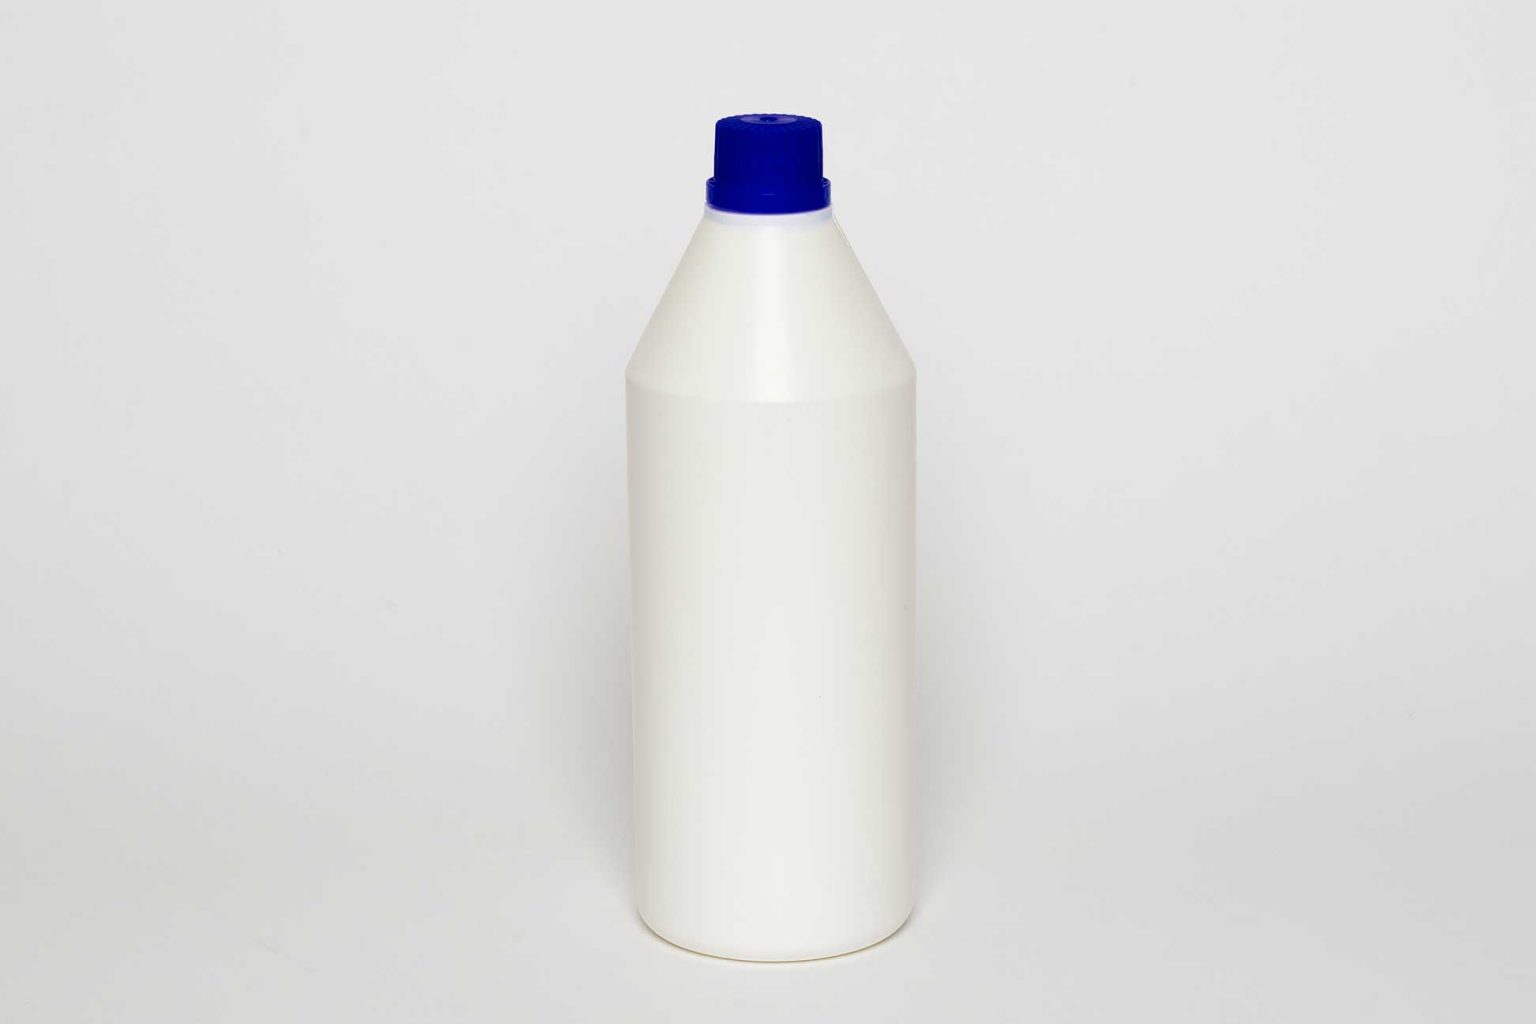 Flacone BB 74 in plastica da 900 ml, 70g, bianco, con tappo ad avvitamento.